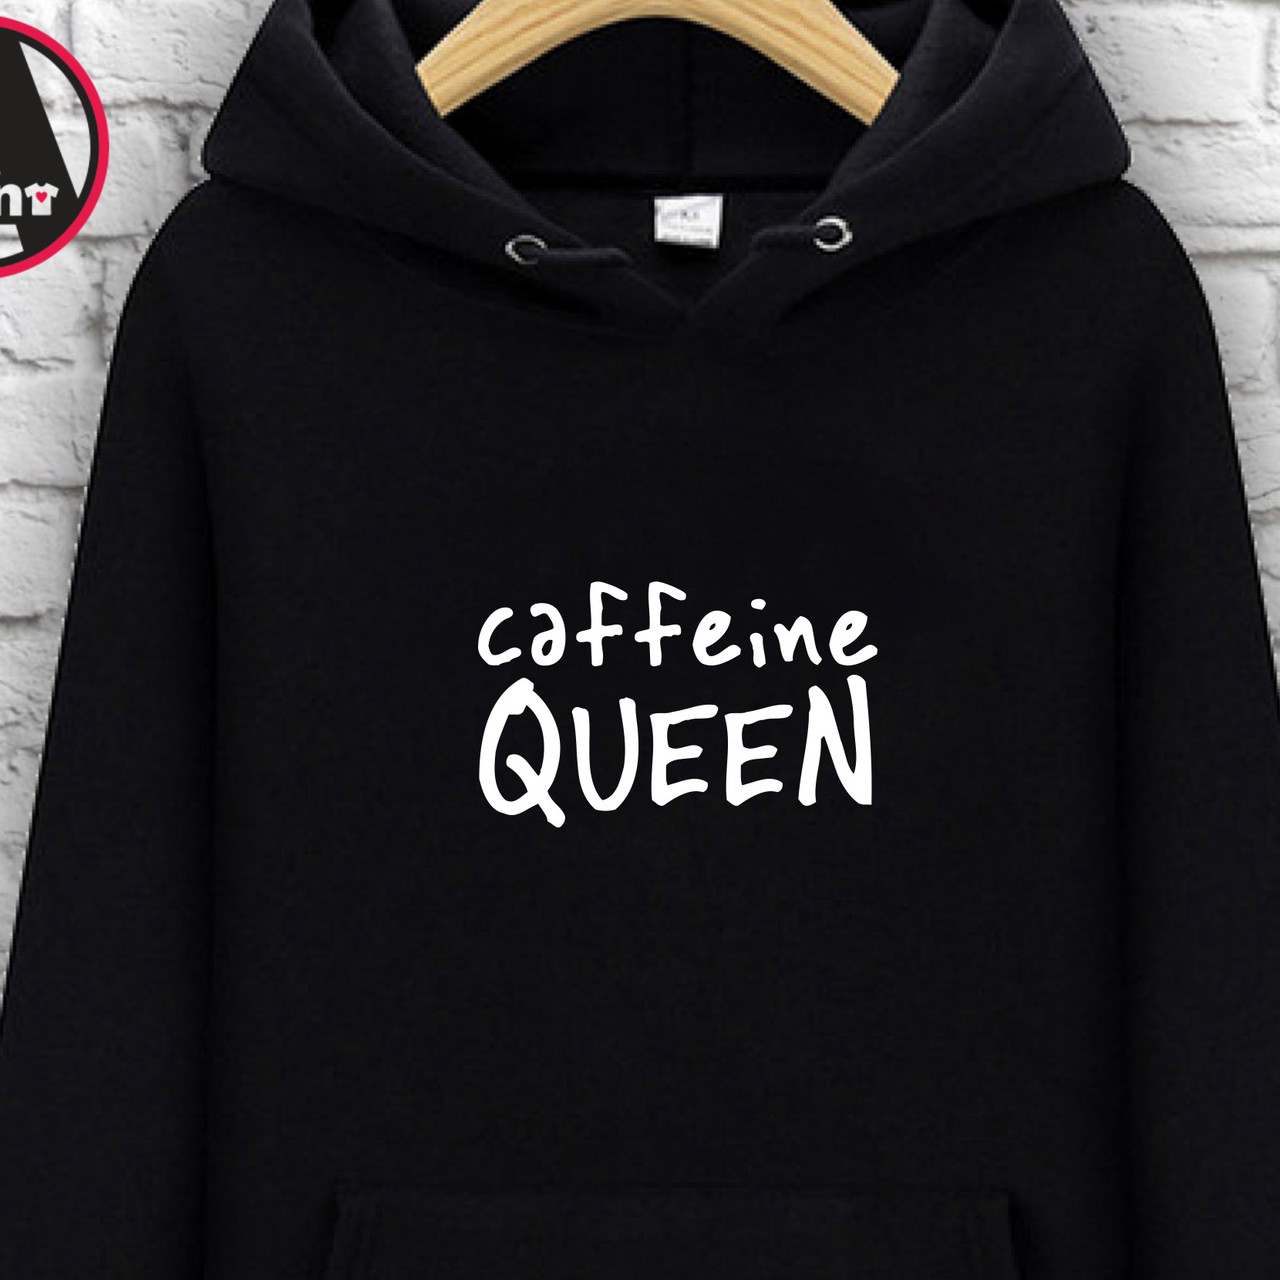 

Худи с принтом "Caffeine queen, Худи с принтом "Caffeine queen" XL